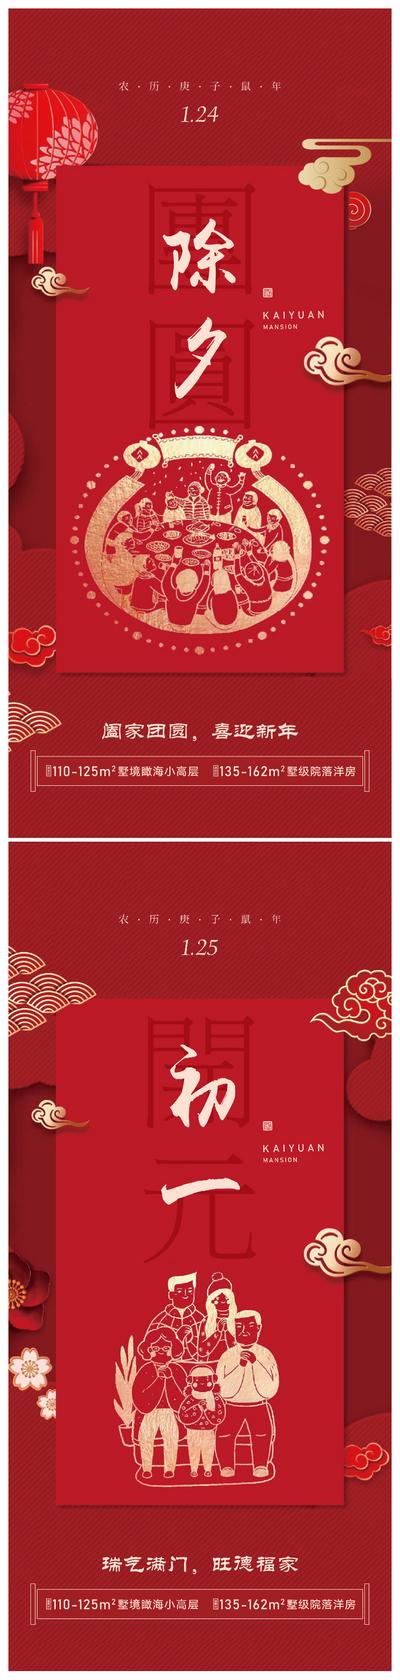 南门网 海报 中国传统节日 房地产 春节 除夕 初一 剪纸 红金